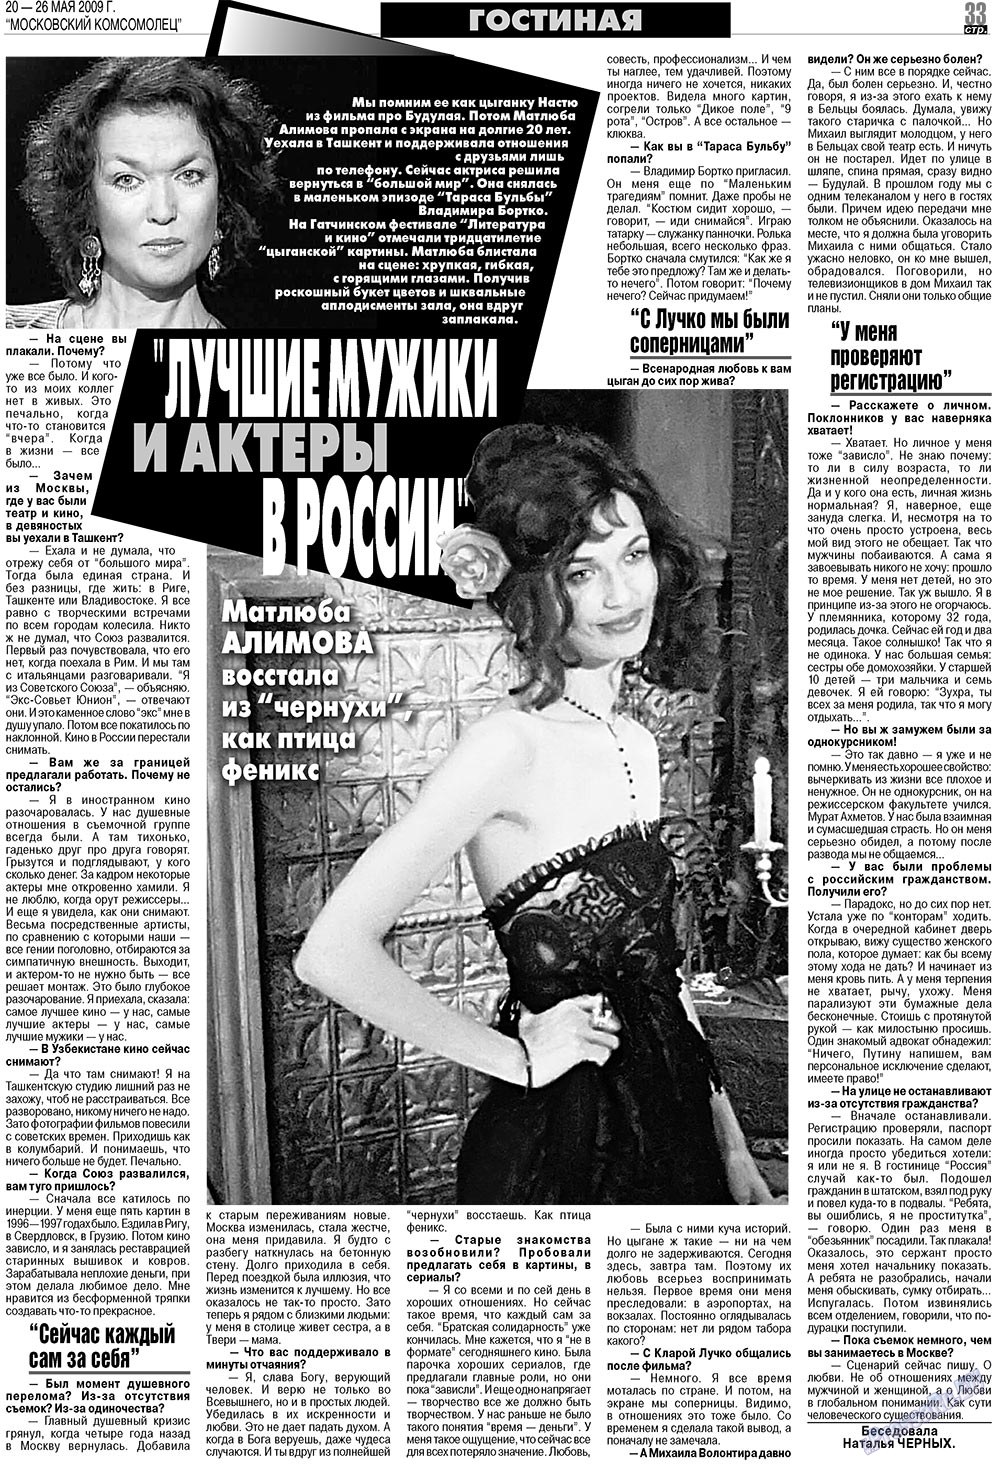 МК Испания, газета. 2009 №21 стр.33